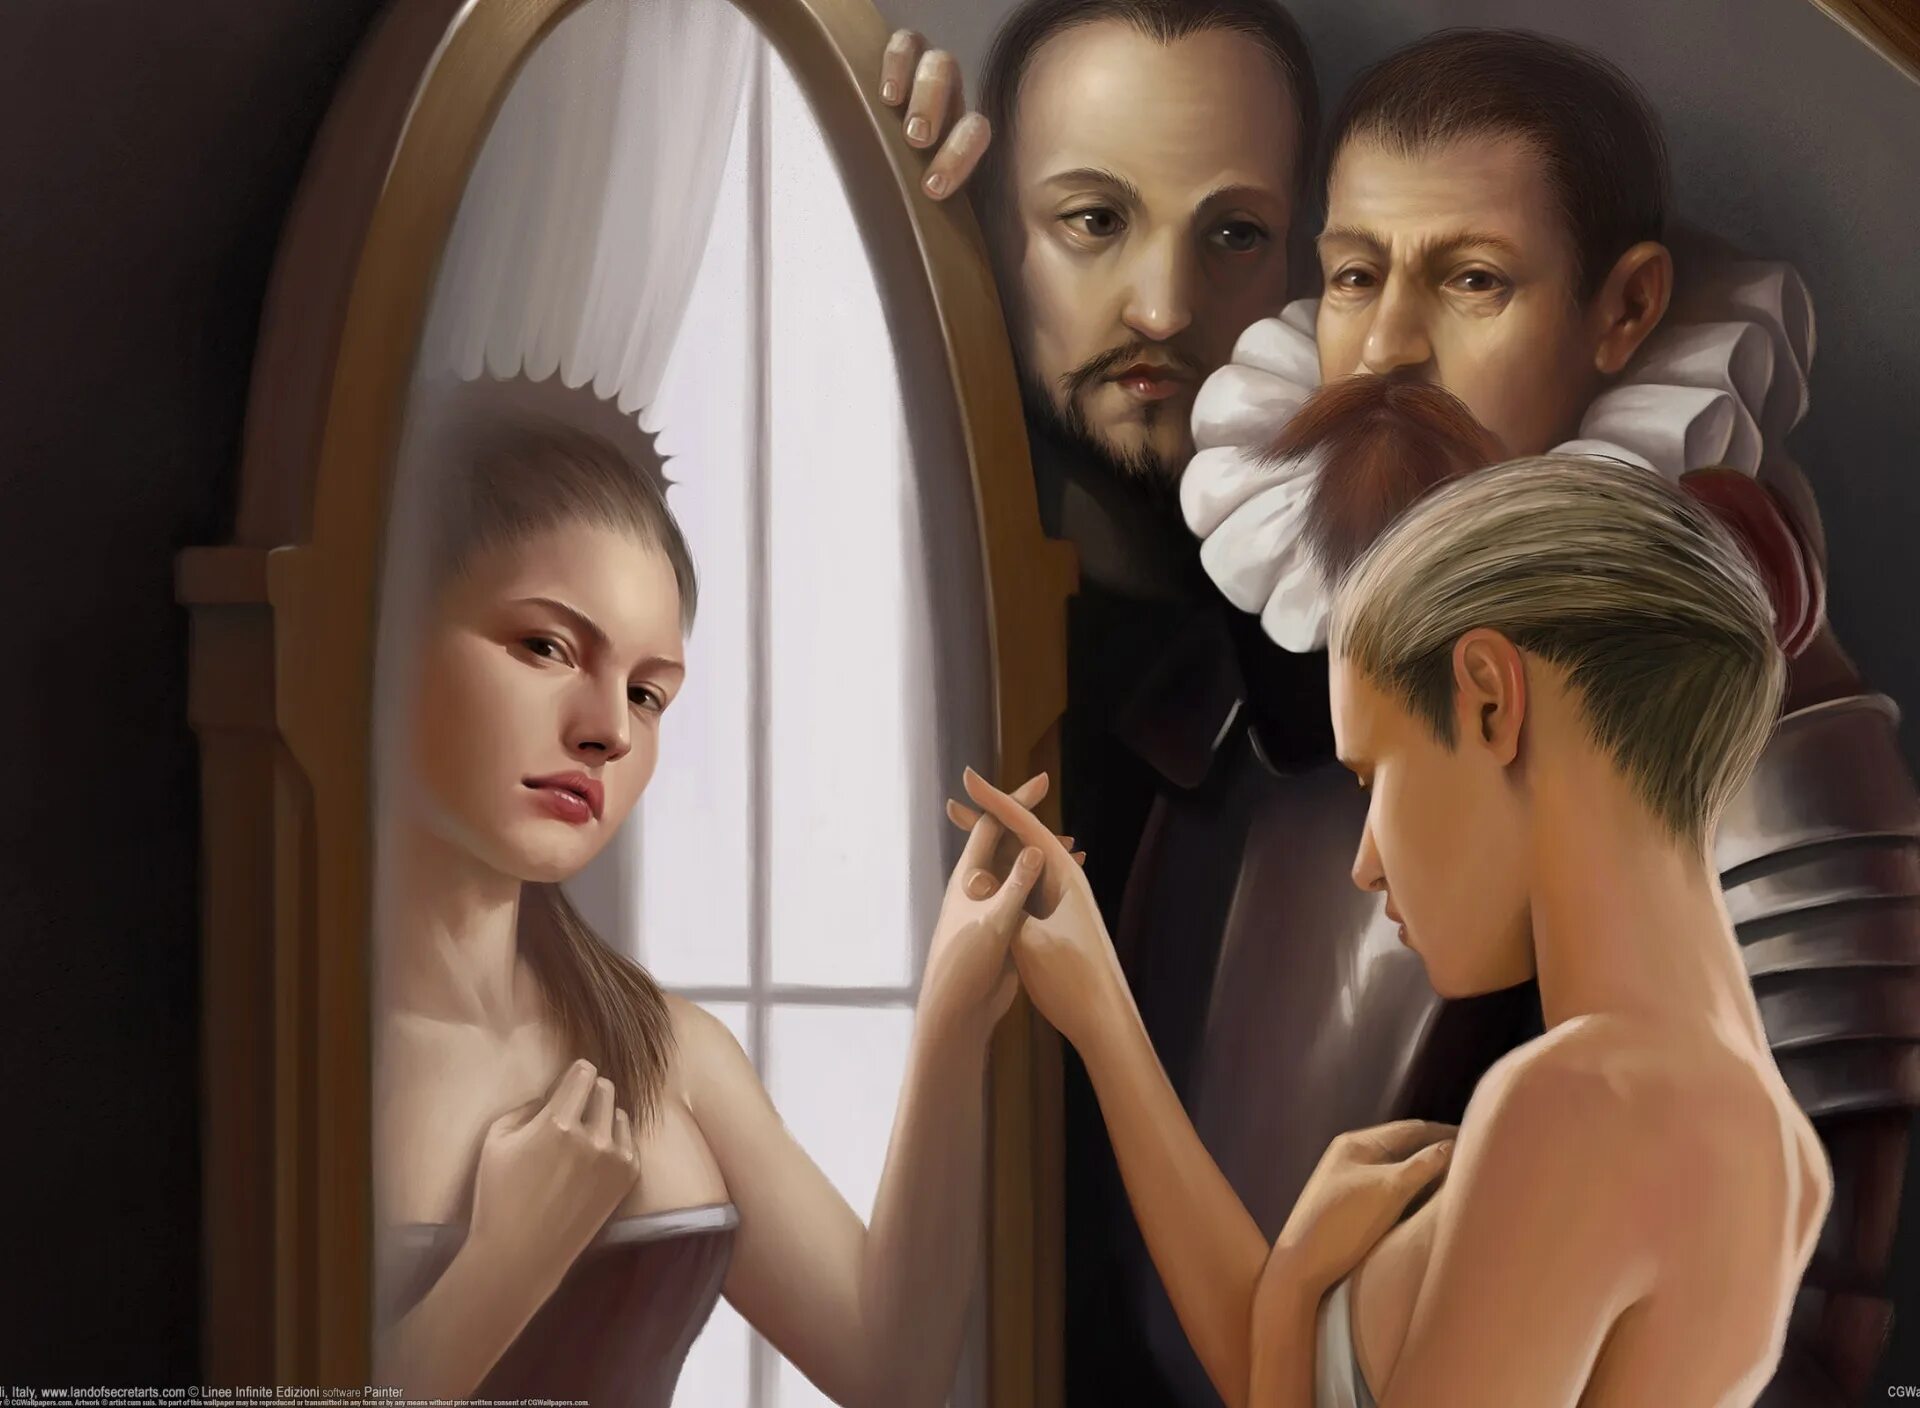 Отражение тема дня. Коррадо Ванелли. Отражение в зеркале. Портрет с отражением. Картина отражение в зеркале.